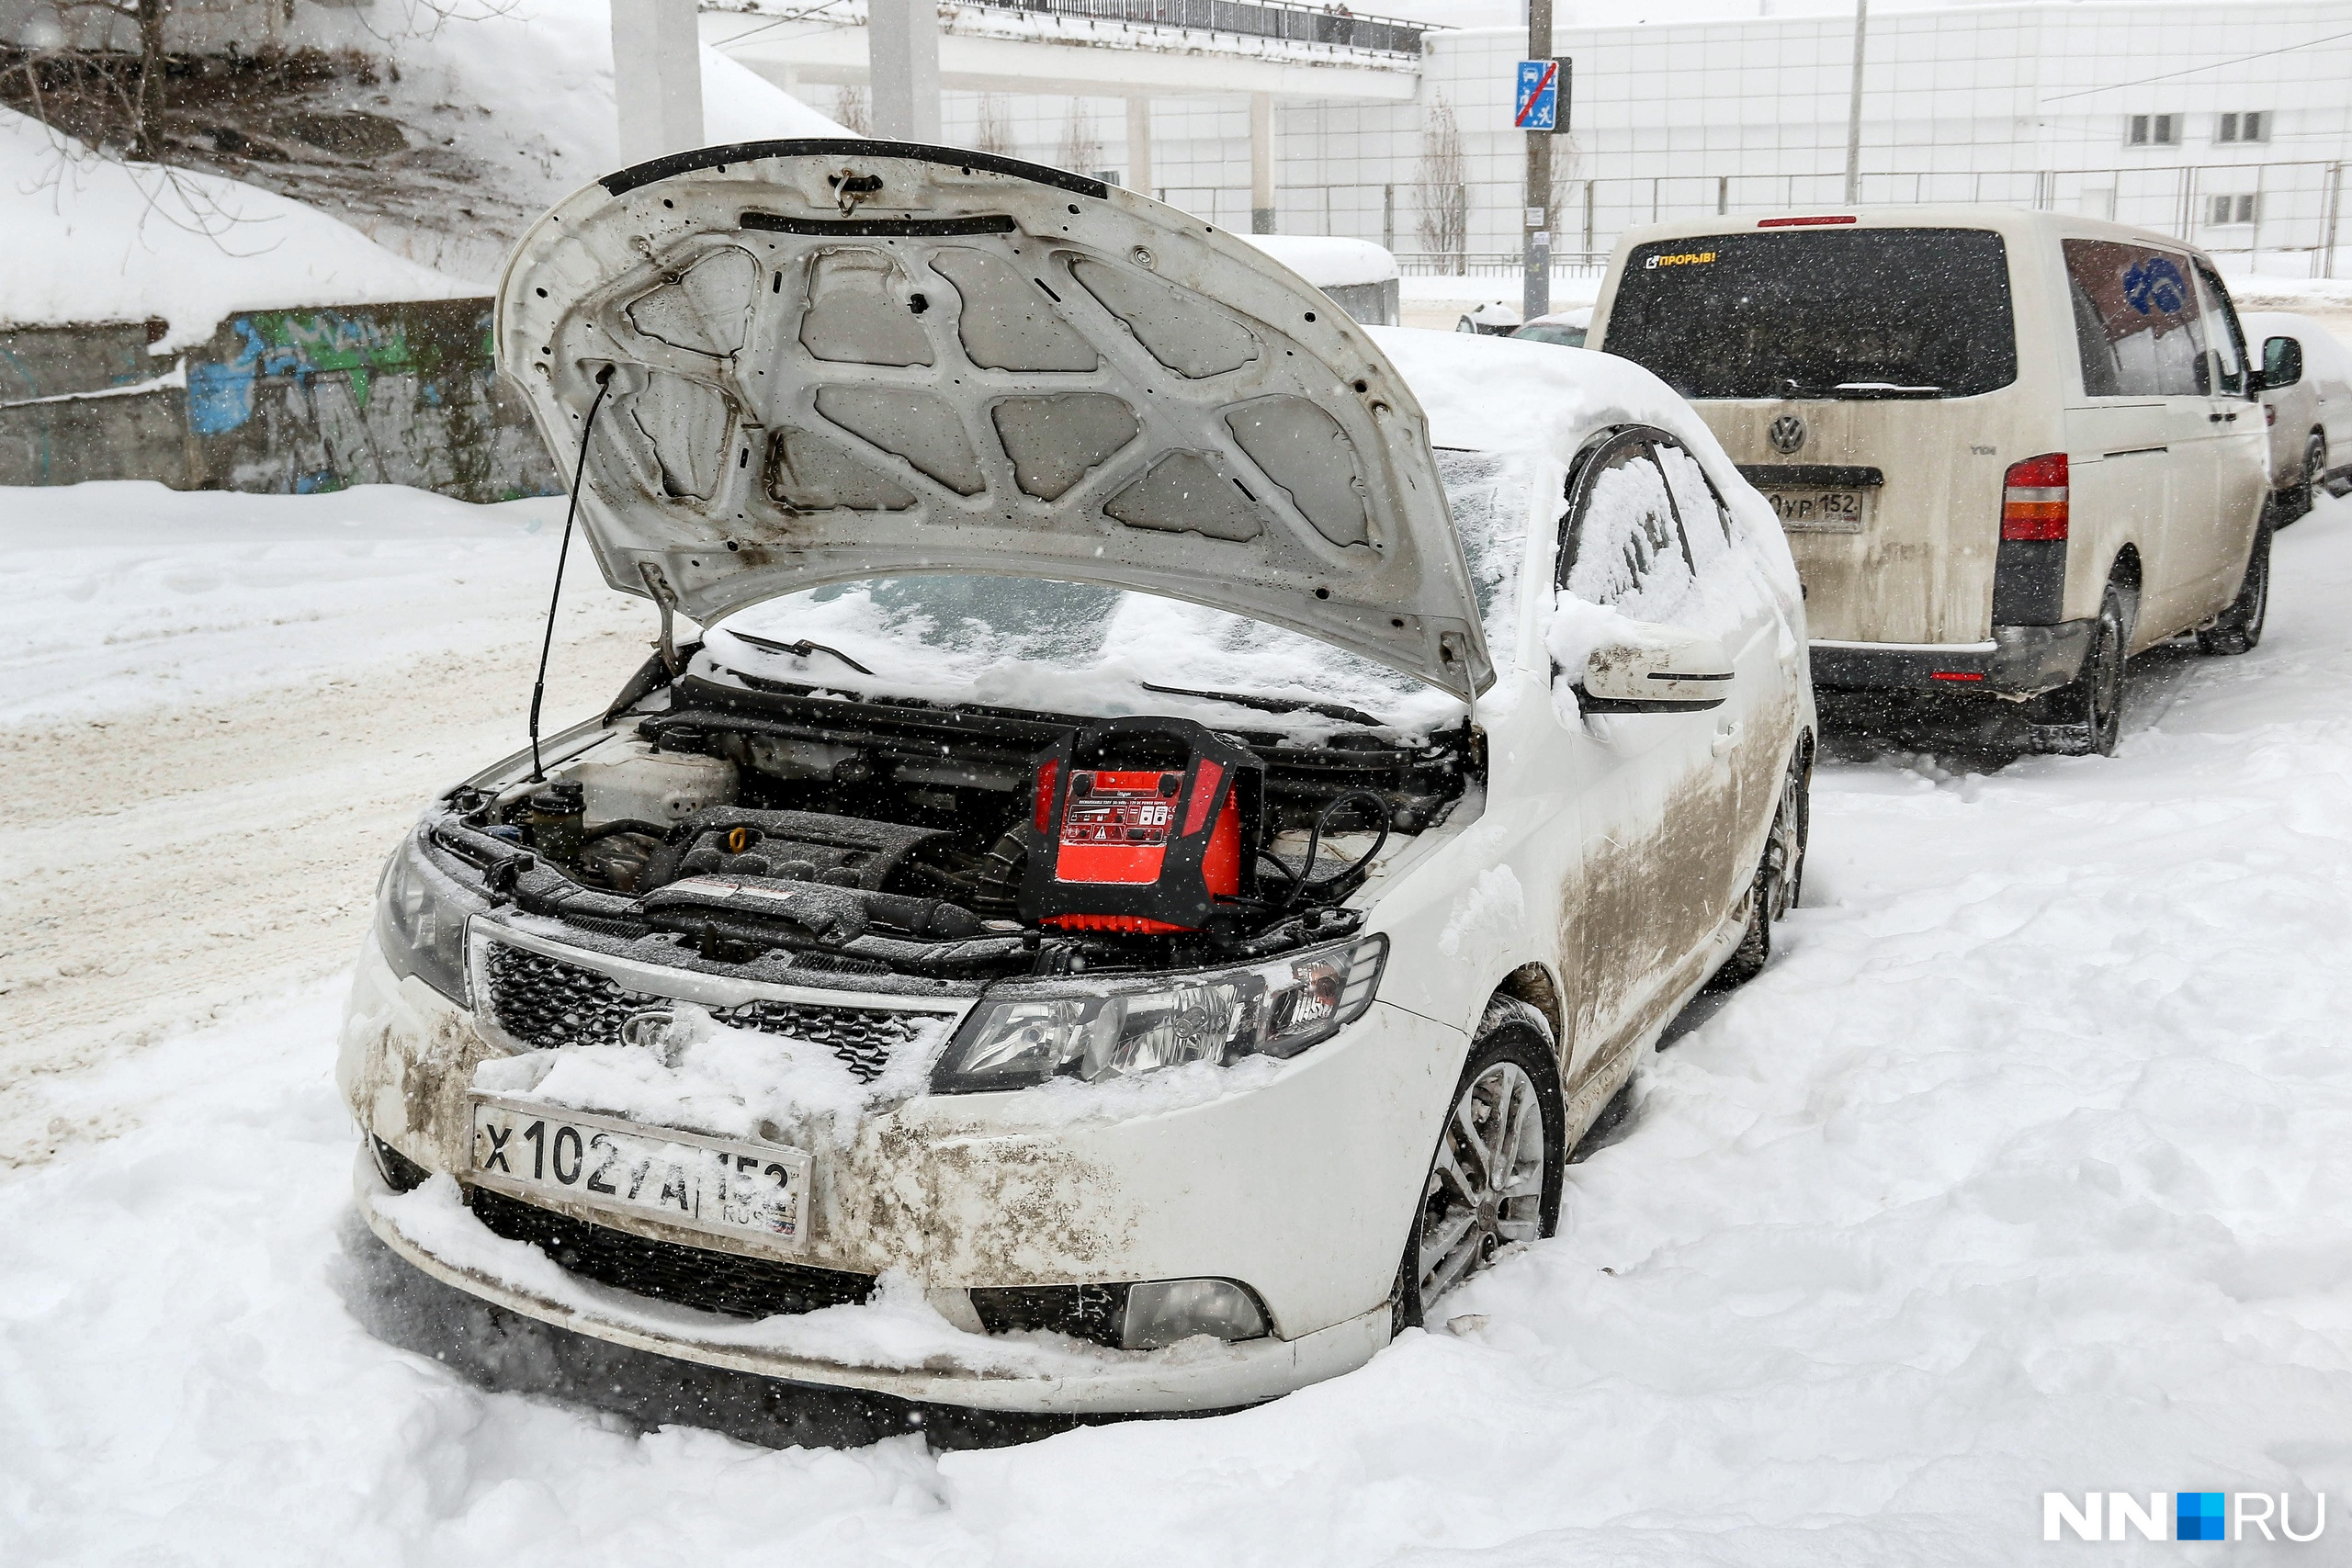 Владелица машины недавно переехала в Нижний Новгород из Сочи. Аккумулятор седана оказался не готов к резкому похолоданию